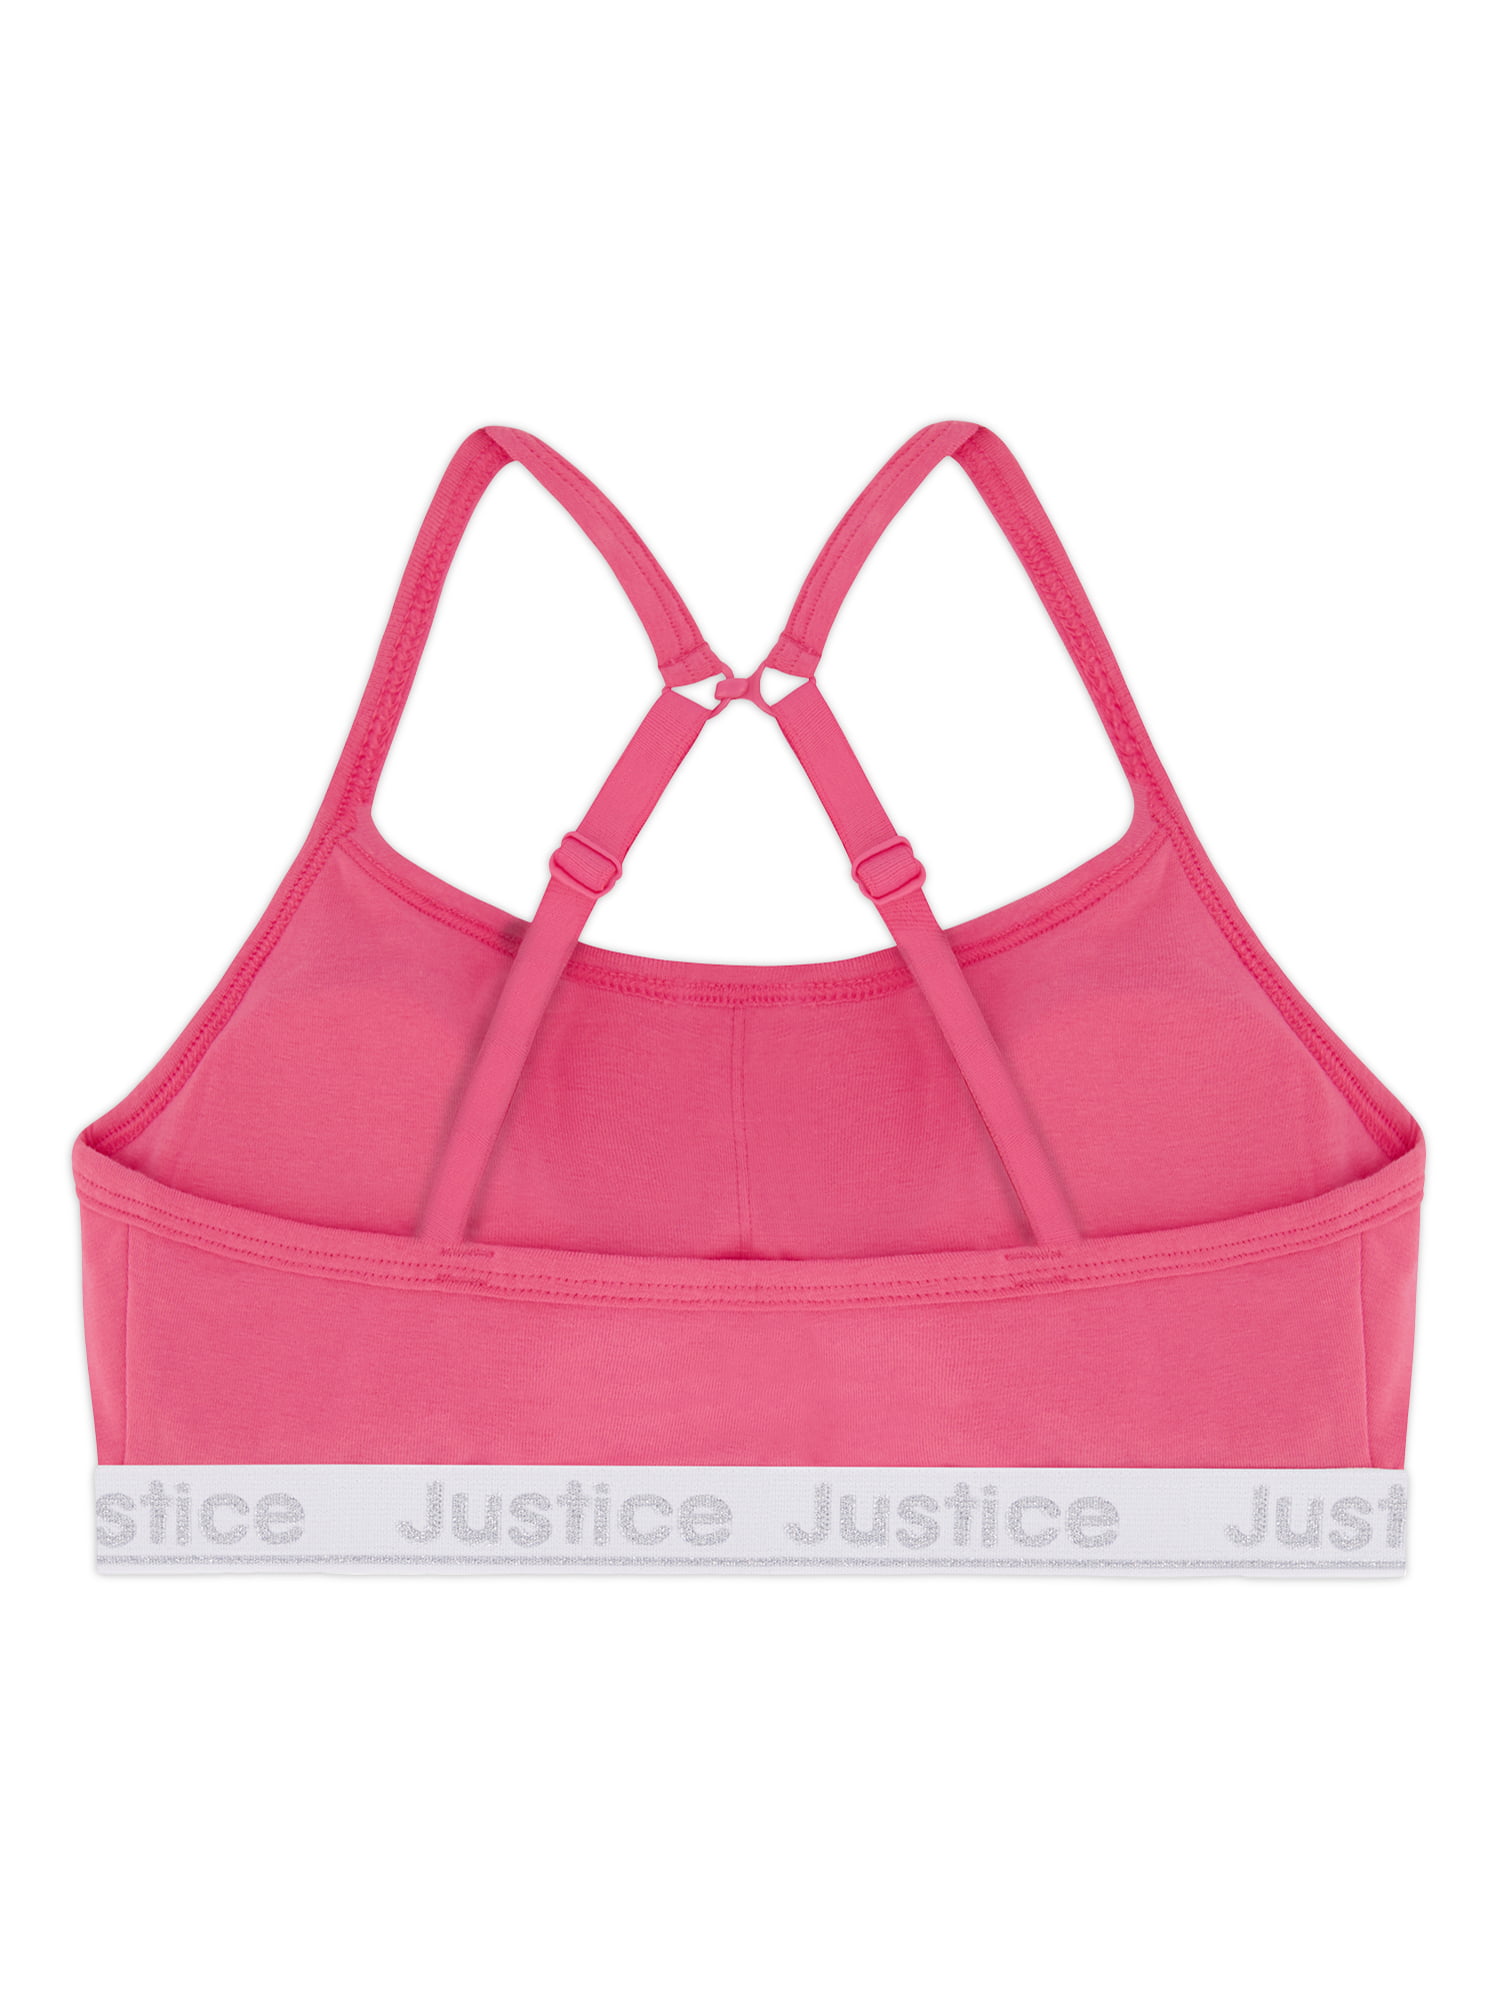 Girls Justice Sport Fushia Pink front black zip sports bra sz Lge